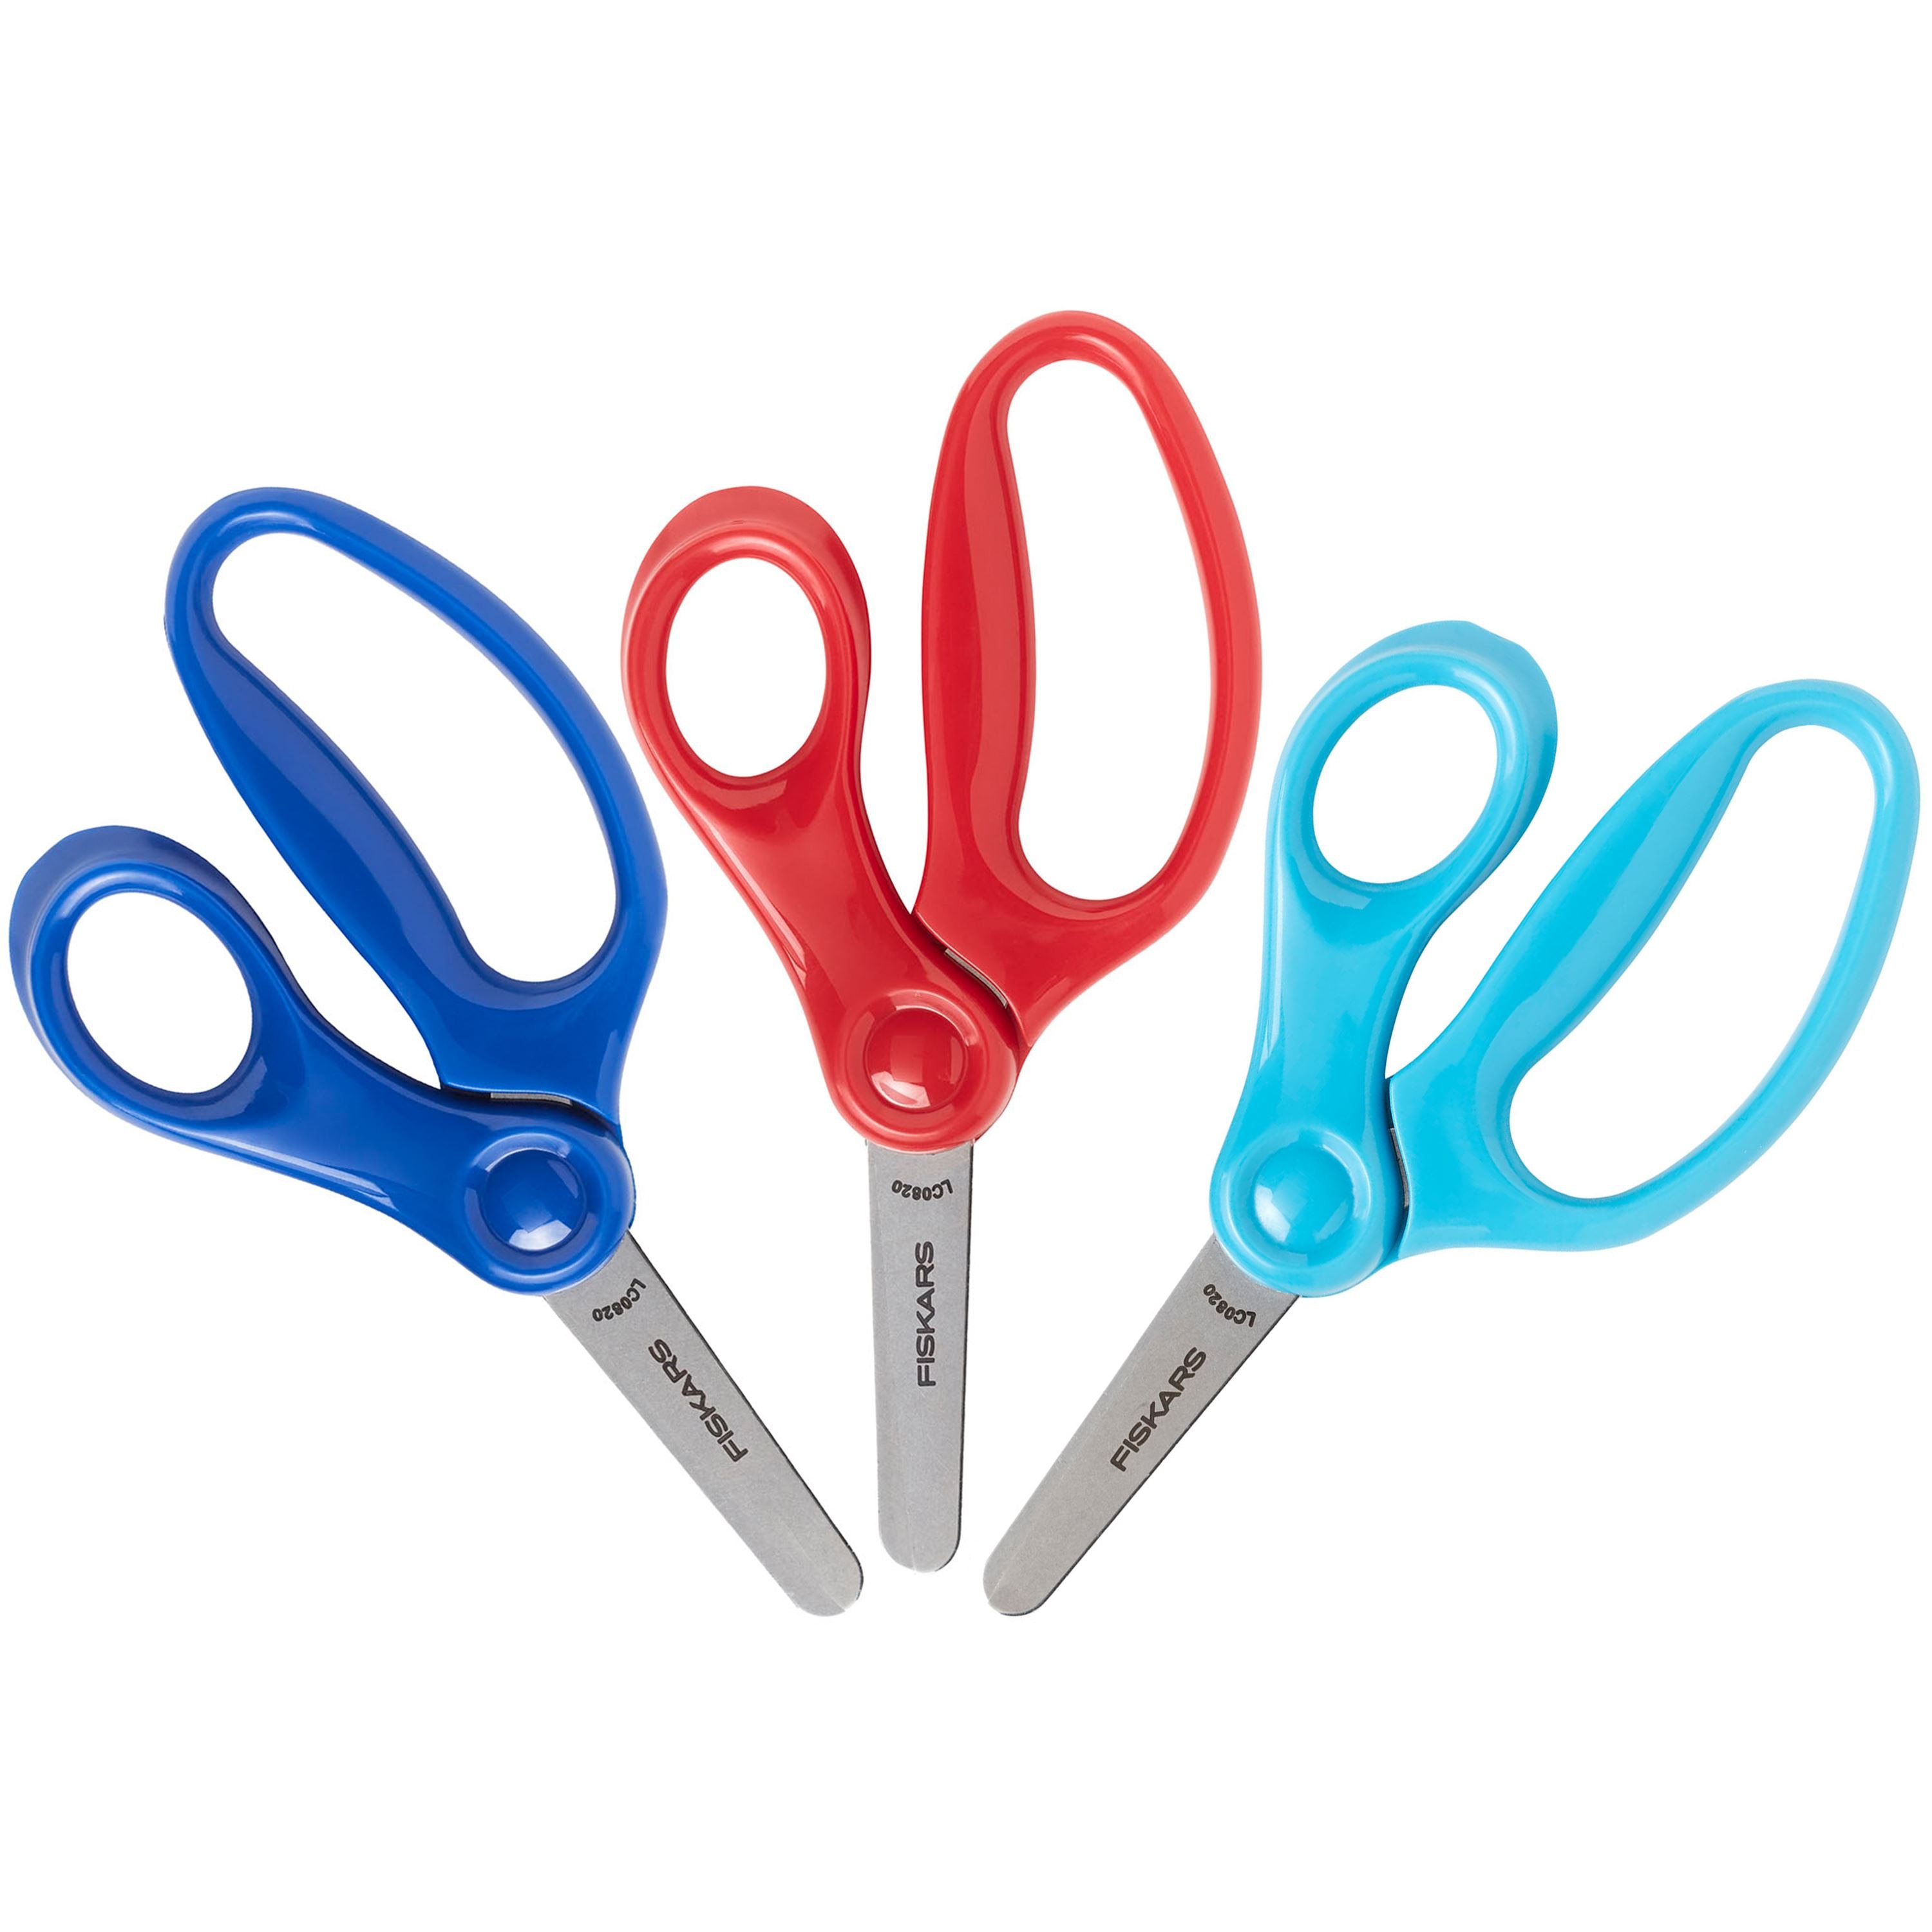 5 Blunt Fiskars Scissors - Ready-Set-Start